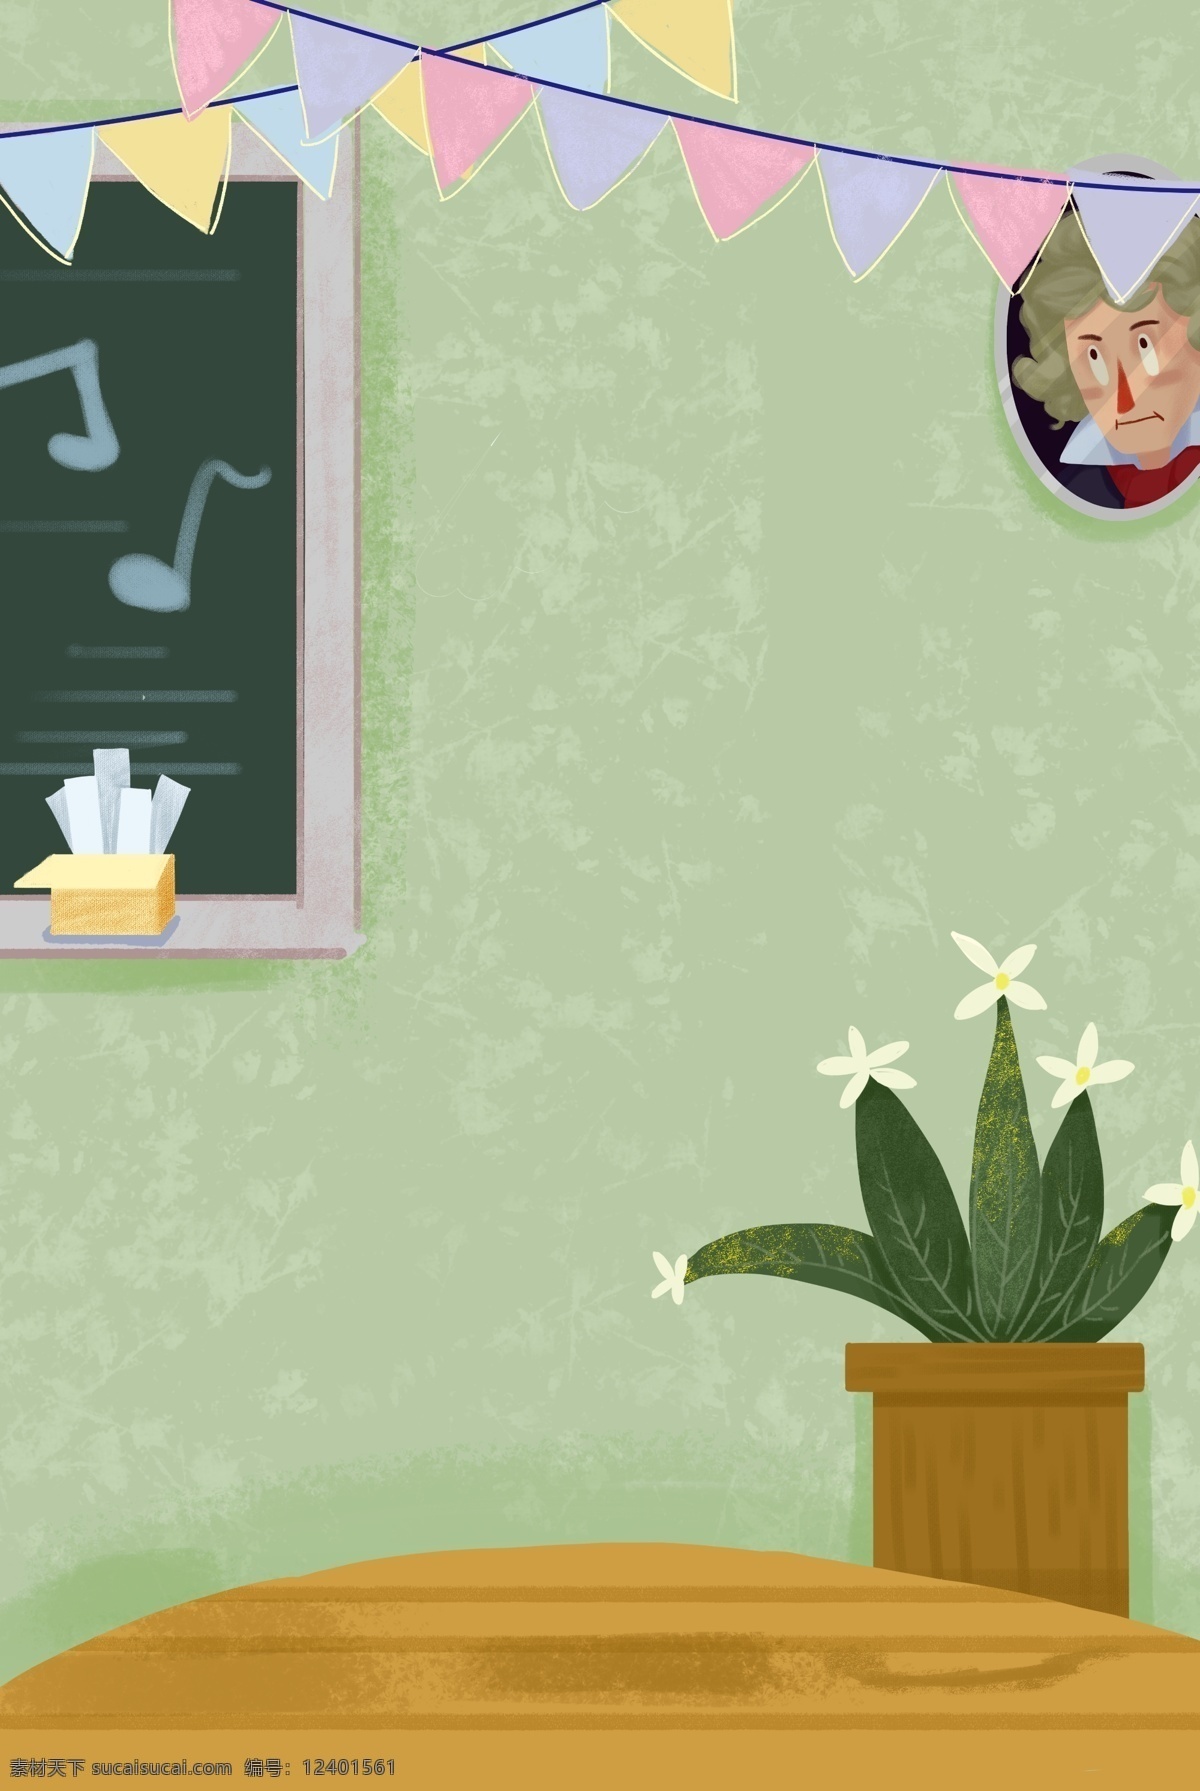 室内 音乐 教室 背景 木地板 教室背景 音乐教室 音乐氛围 插画背景 盆栽 授课 淡雅的颜色